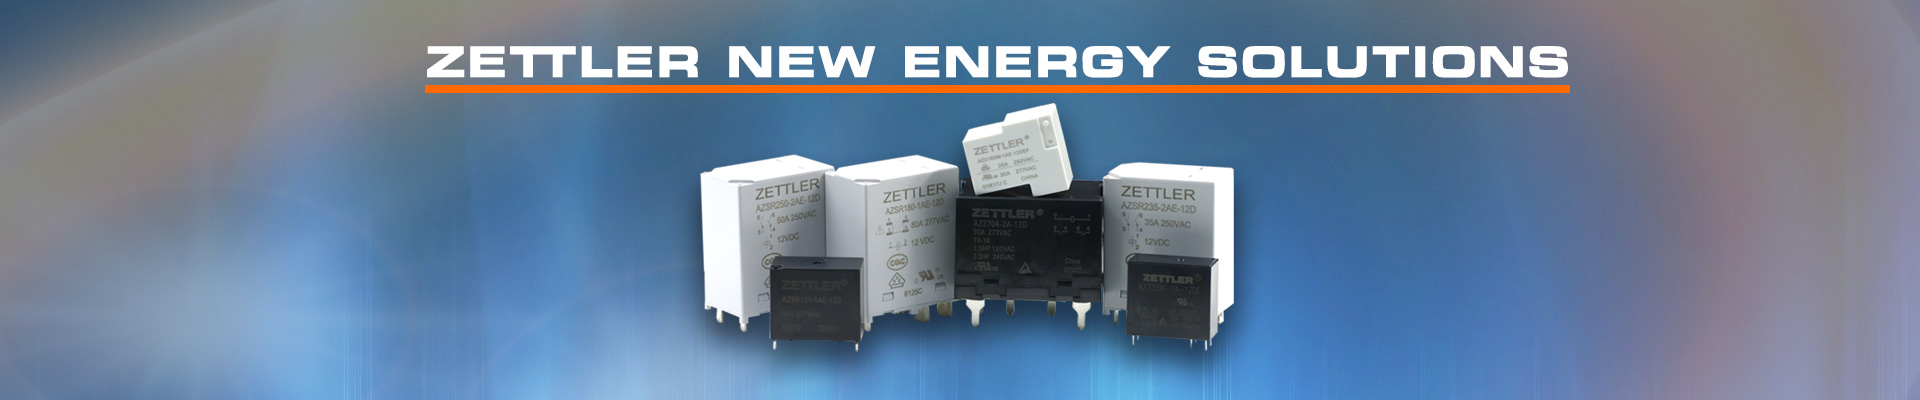 ZETTLER Group New Energy Solutions